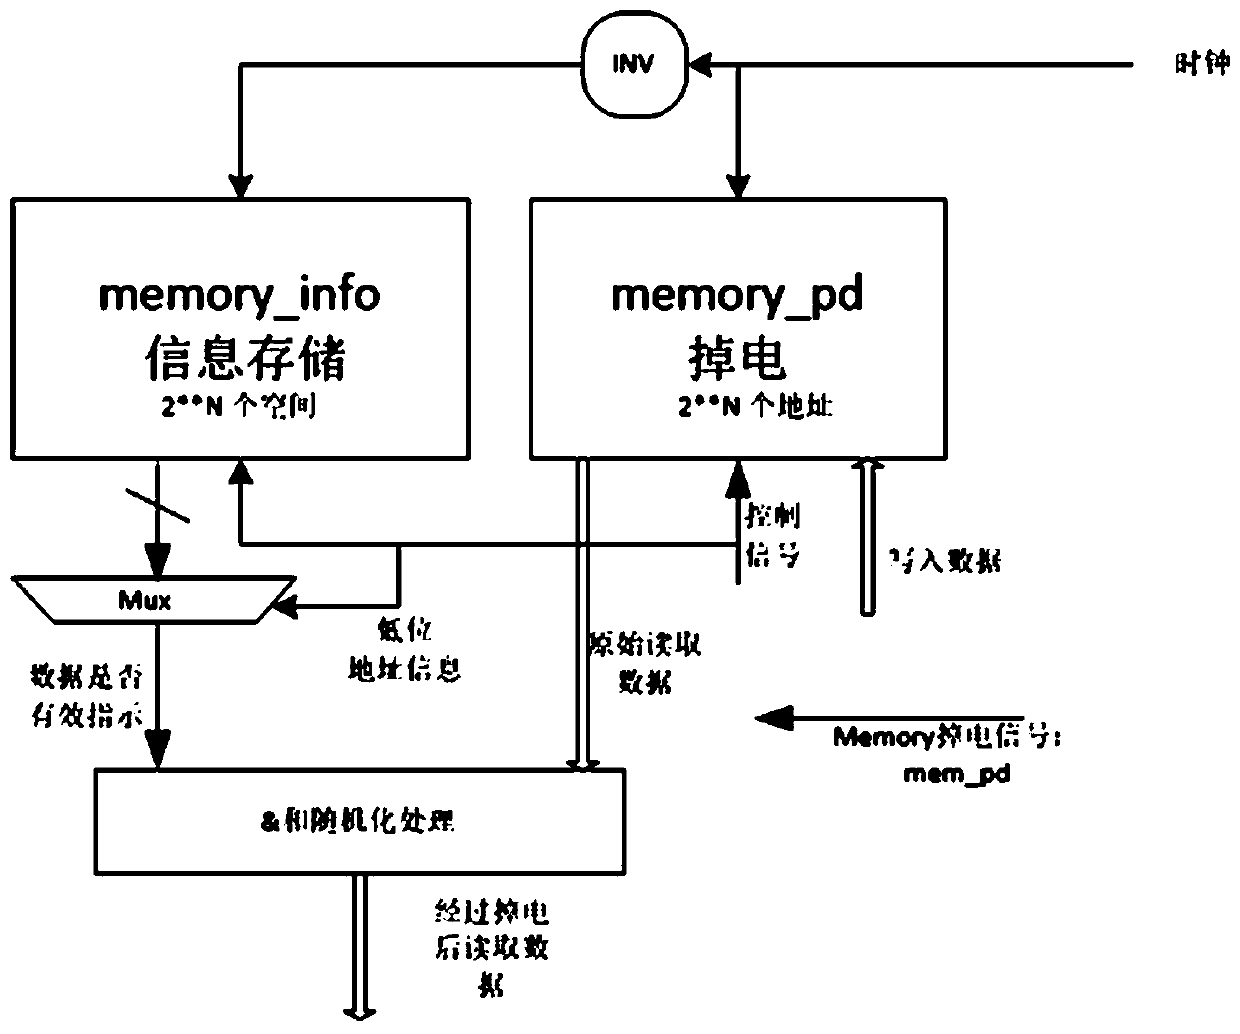 Method for simulating power failure of memory in FPGA